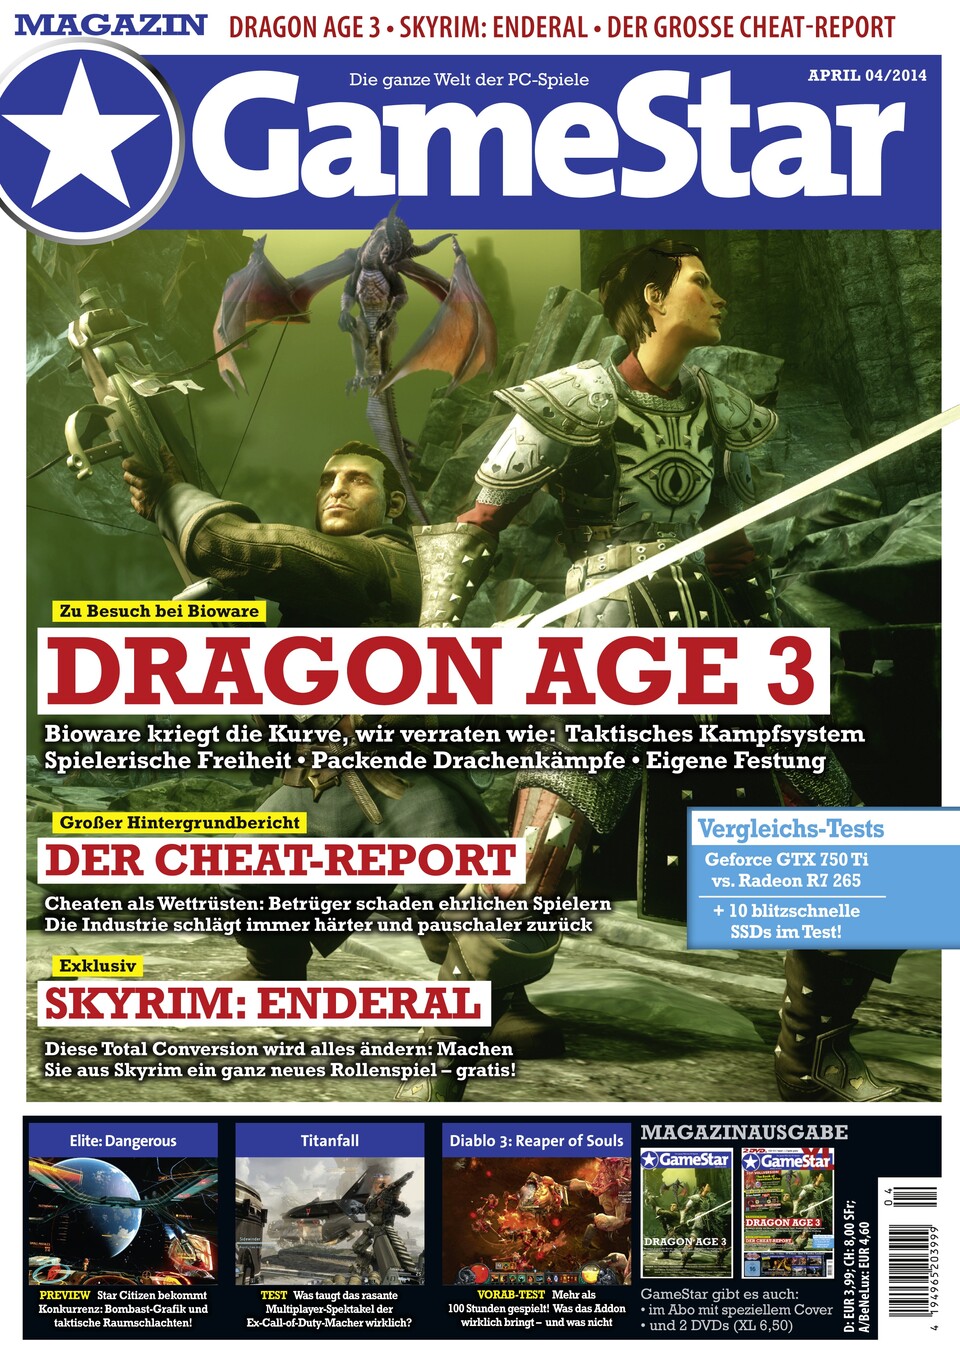 Alles zu Dragon Age: Inquisition in der der neuen GameStar-Ausgabe 04/2014 - mit ausführlicher Titelgeschichte und einem Bericht zu unserem Besuch bei BioWare.